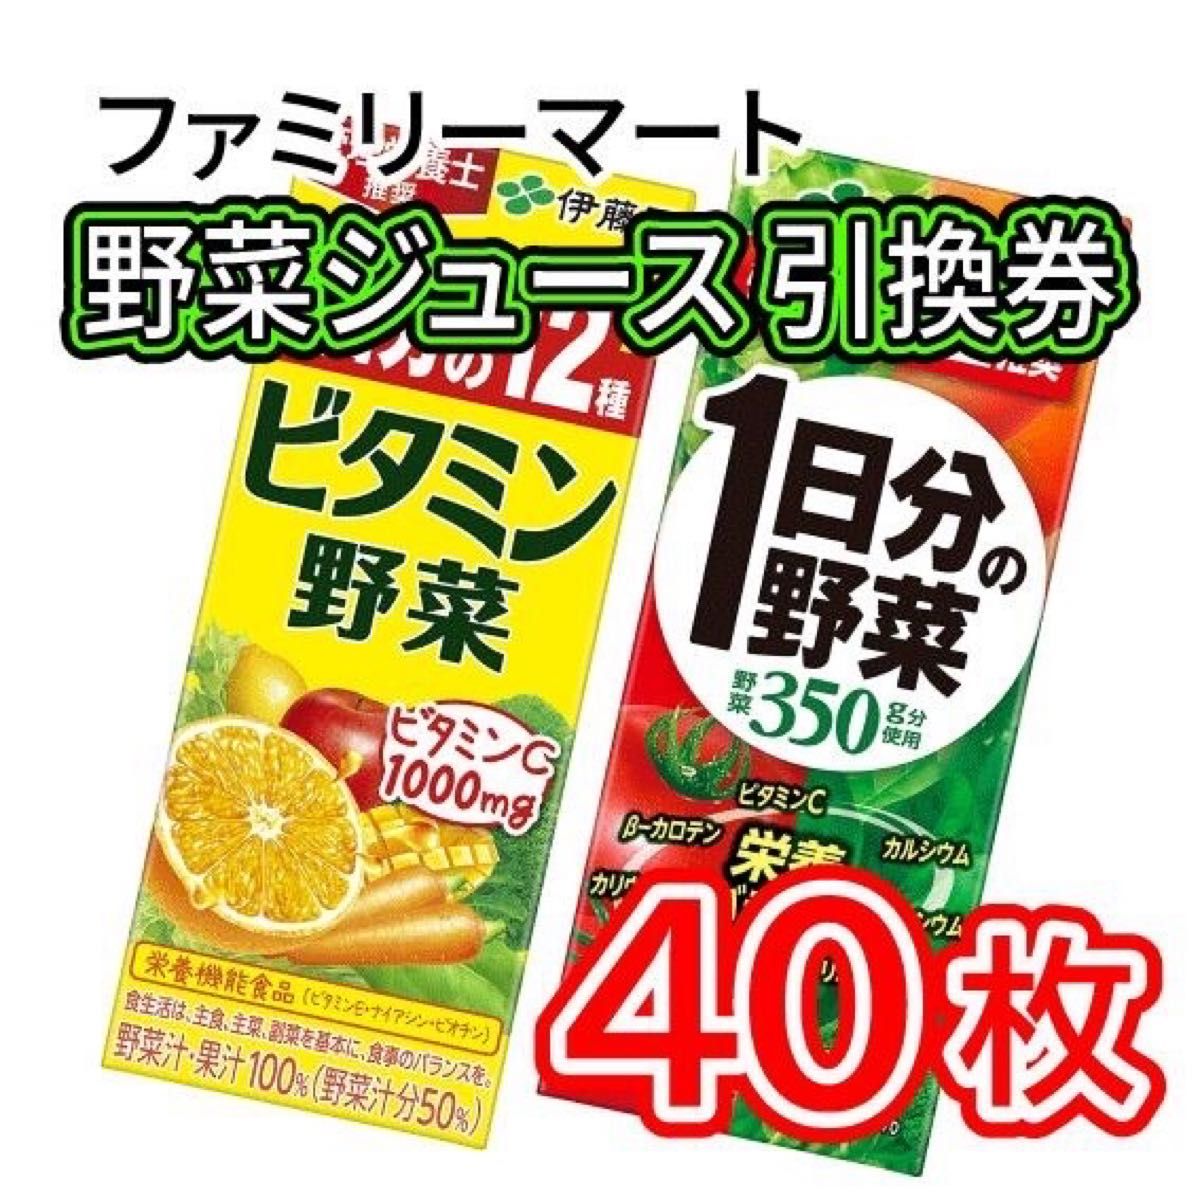 002   ファミリーマート 野菜ジュース 引換券 40枚